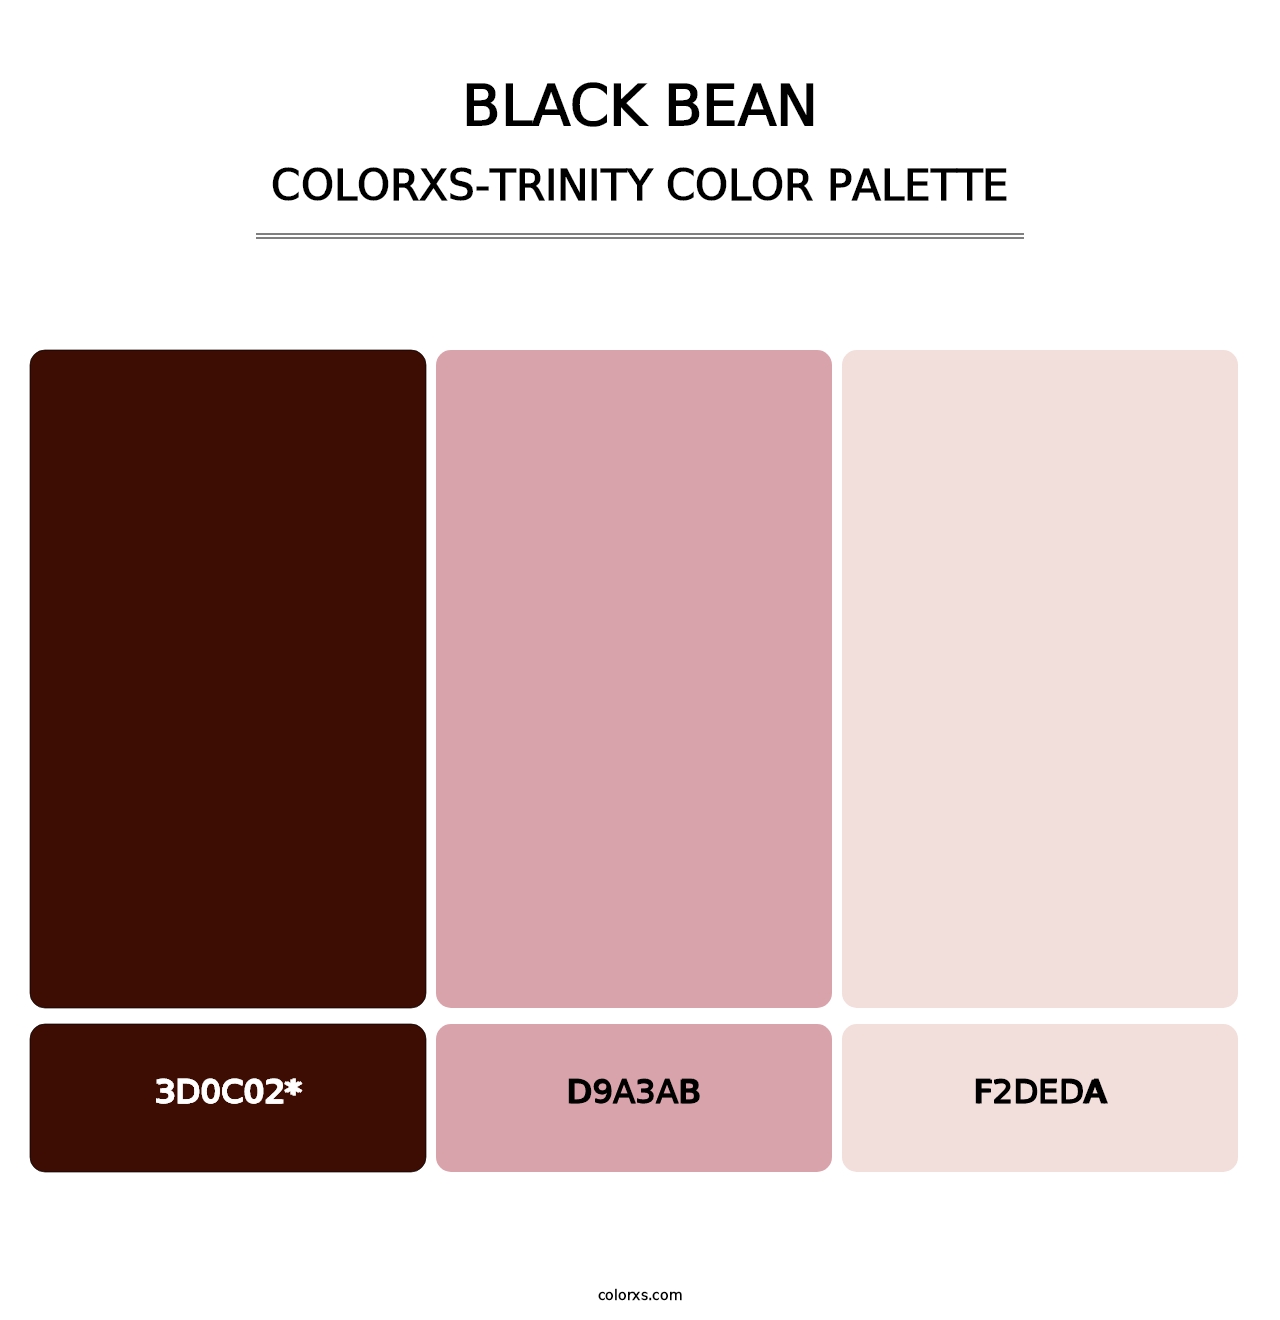 Black Bean - Colorxs Trinity Palette